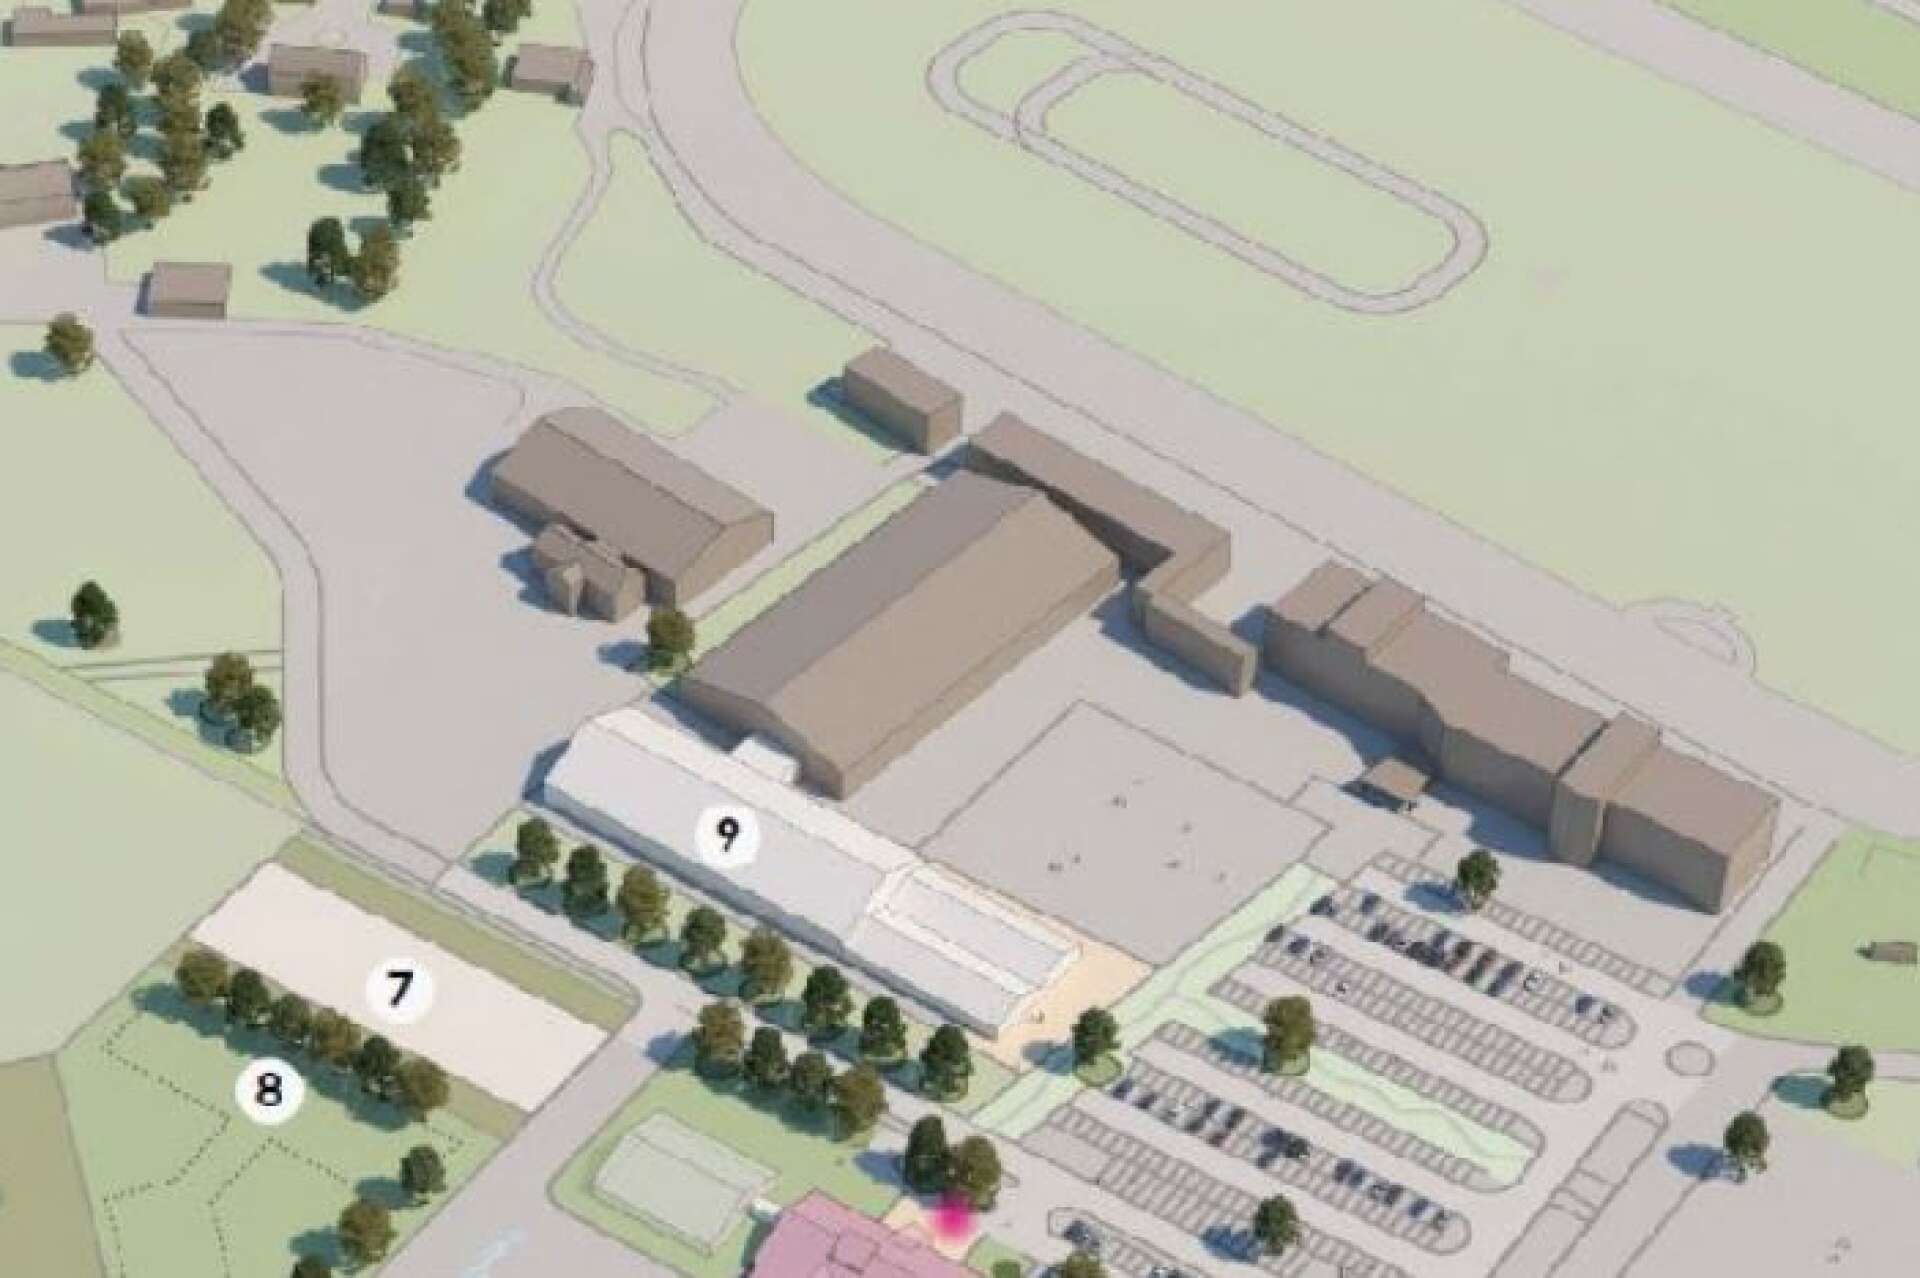 Bygglov har beviljats för ett nytt ridhus vid Axevalla Travbana. Det är den ljusa byggnaden markerad med 9 på kartan. Illustrationen är från detaljplanen.